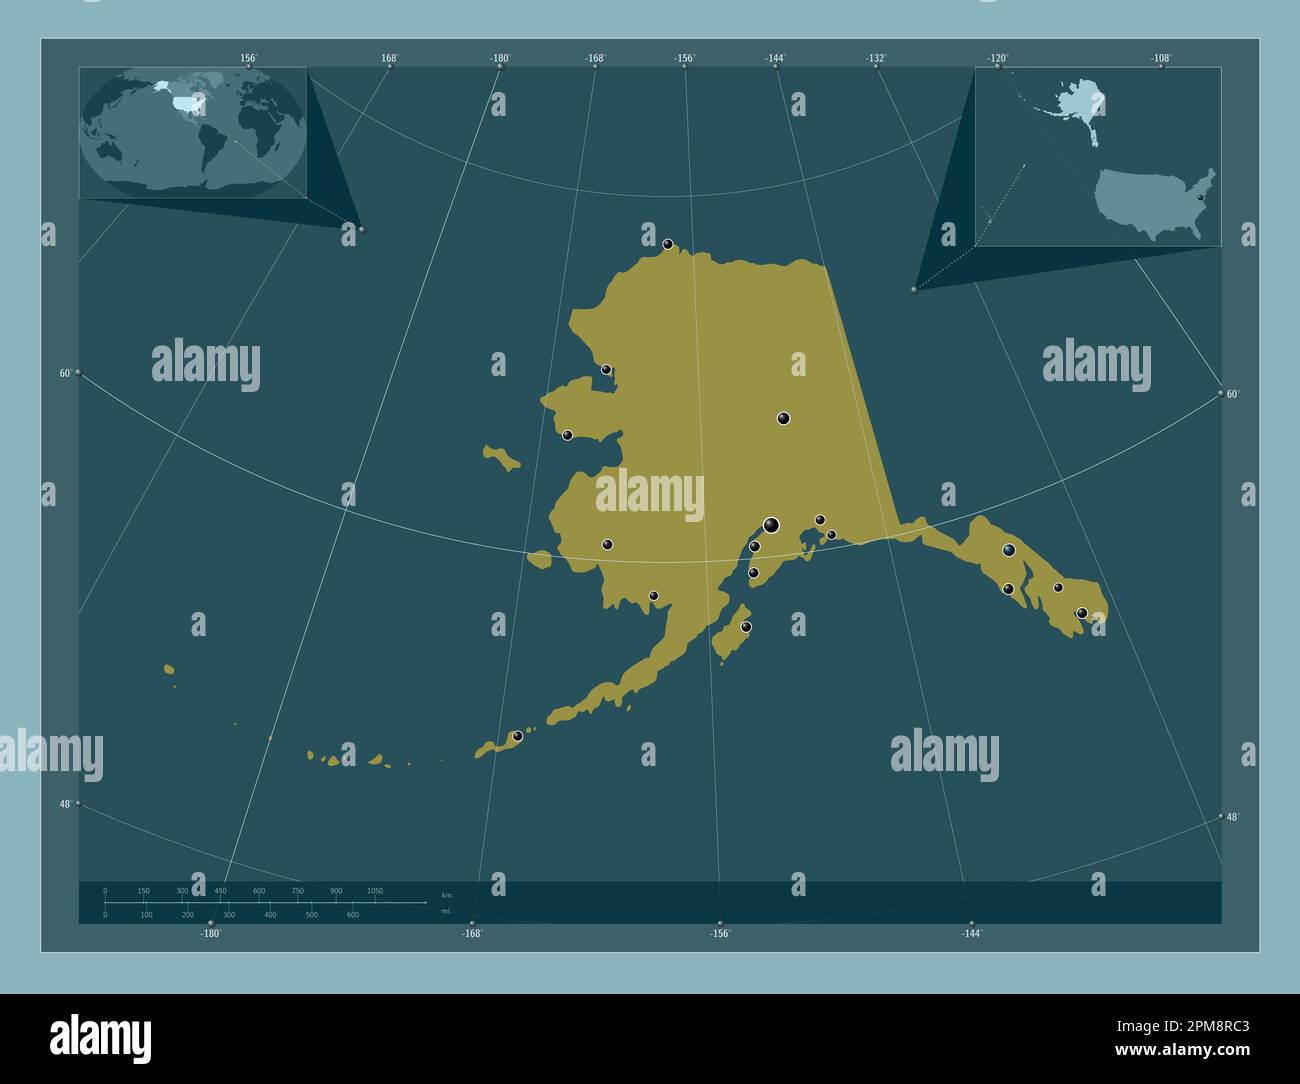 Alaska, Bundesstaat der Vereinigten Staaten von Amerika. Durchgehende Farbform. Standorte der wichtigsten Städte der Region. Eckkarten für zusätzliche Standorte Stockfoto